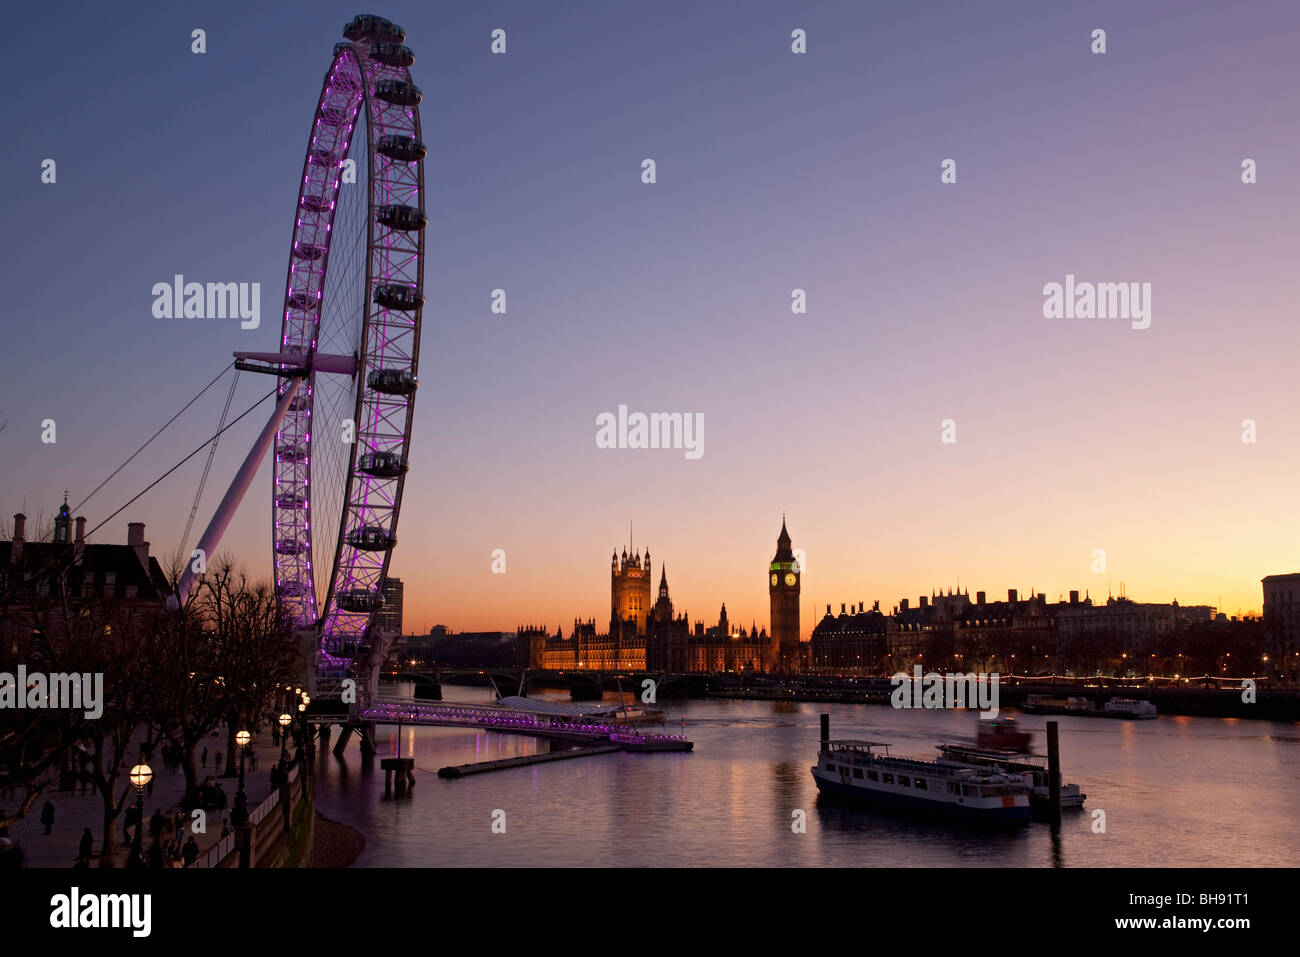 Millennium Wheel, Thames di Fiume Big Ben e le camere del parlamento di notte da South Bank di Londra, Inghilterra, Europa Foto Stock